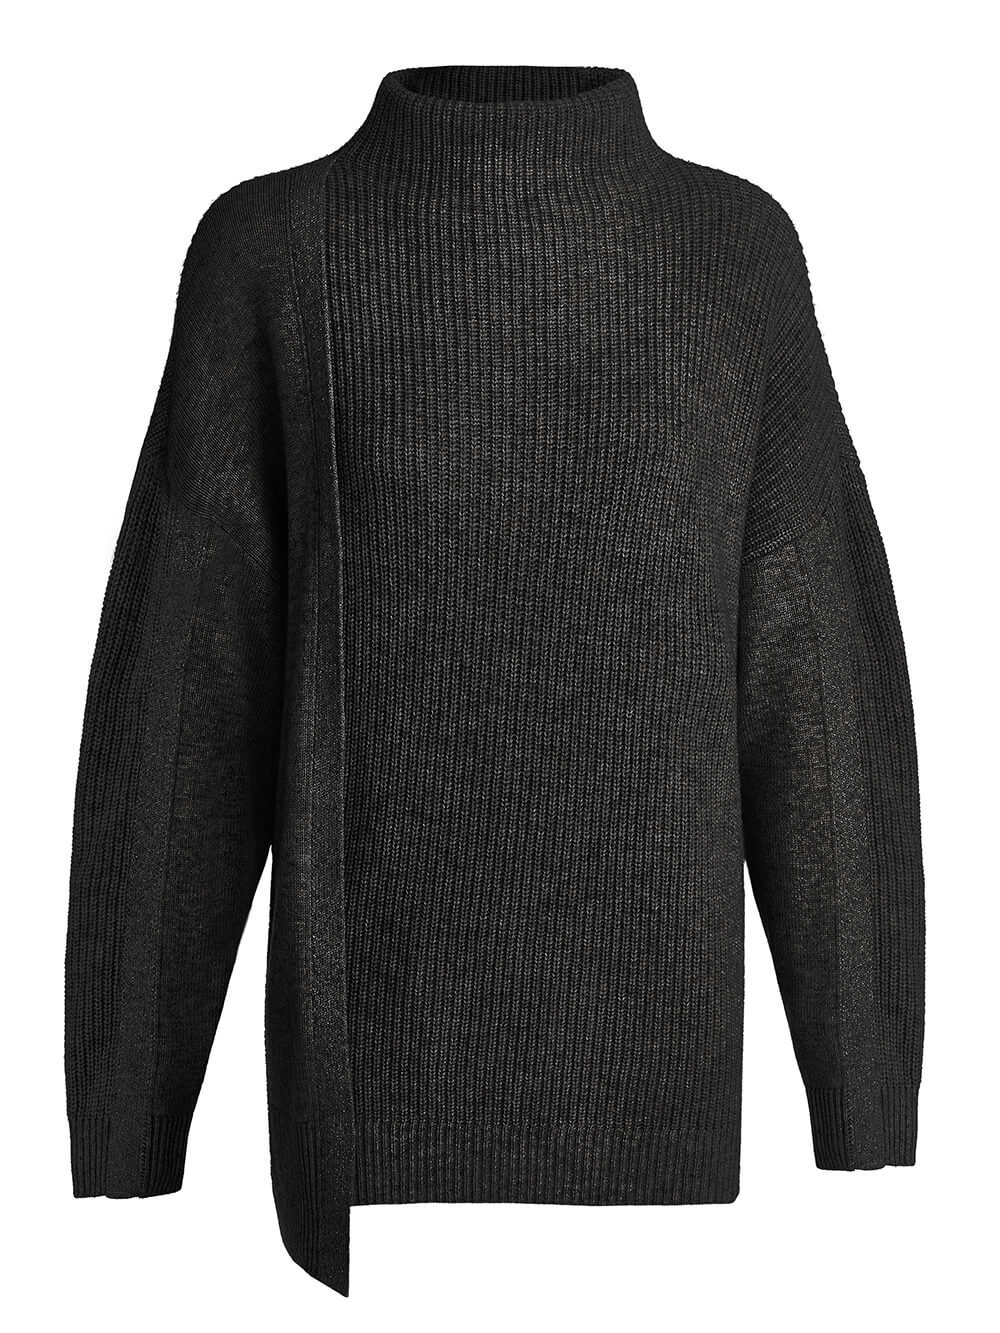 Женский свитер черного цвета из шерсти и кашемира